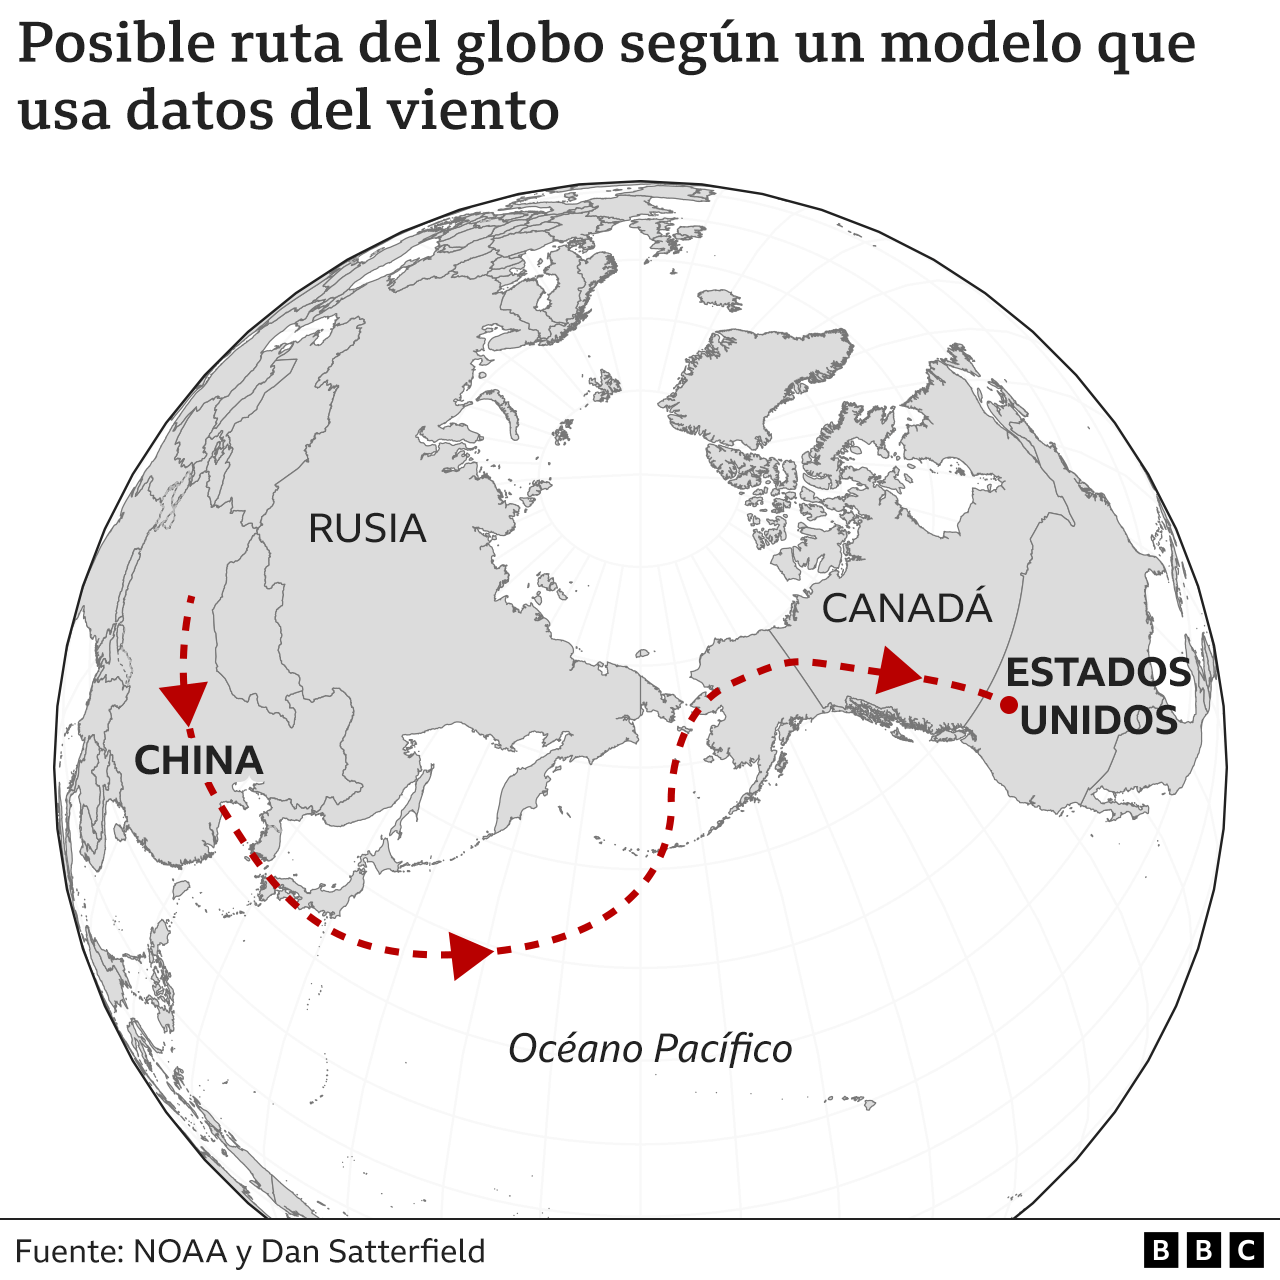 Mapa de posible ruta del globo según un modelo que usa datos del viento.